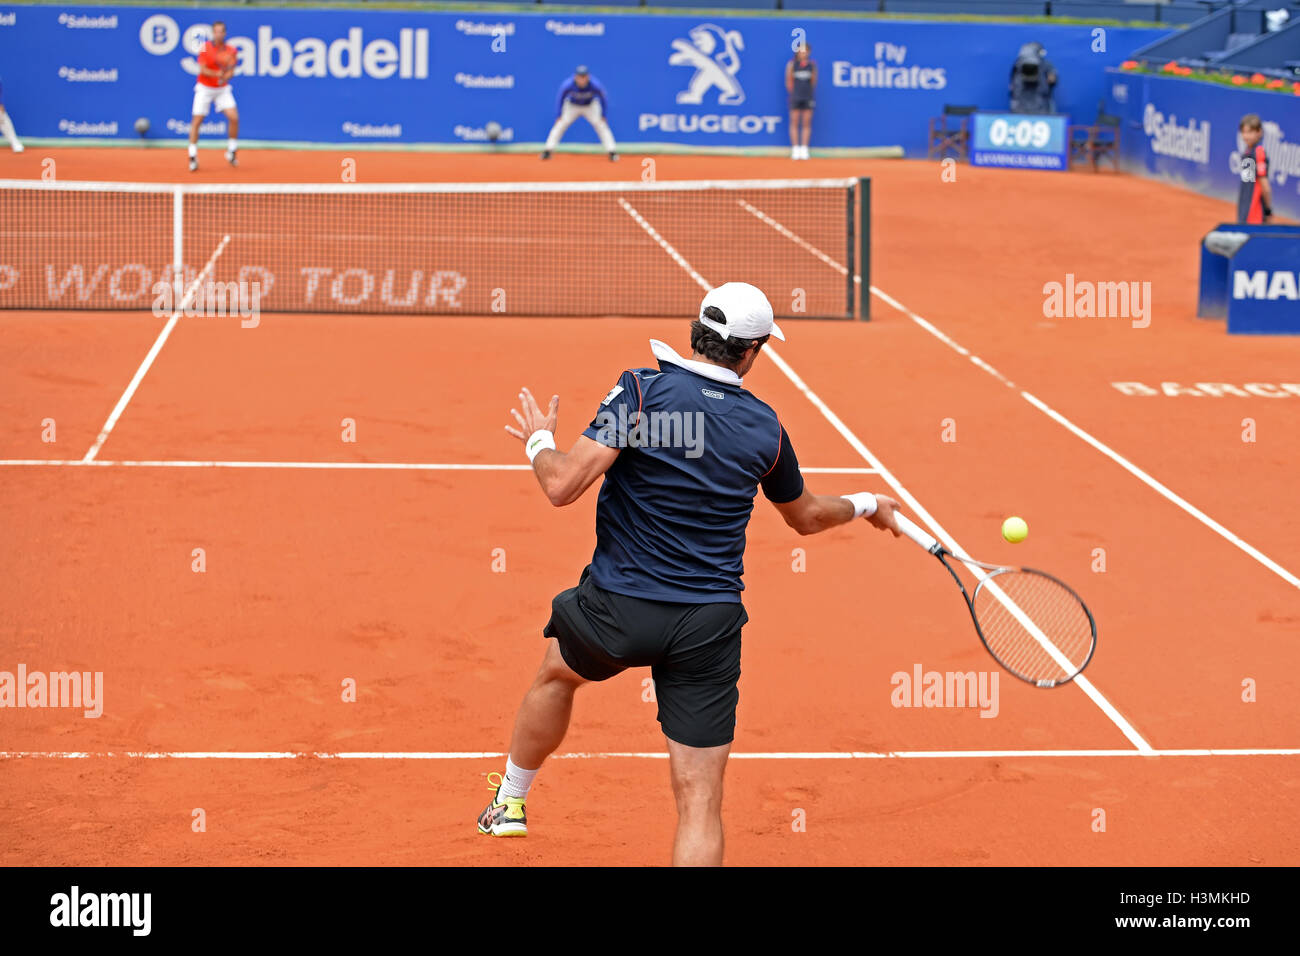 Barcelone - 20 avr : Pablo Andujar (joueur de tennis) joue à l'ATP Barcelone ouvert. Banque D'Images